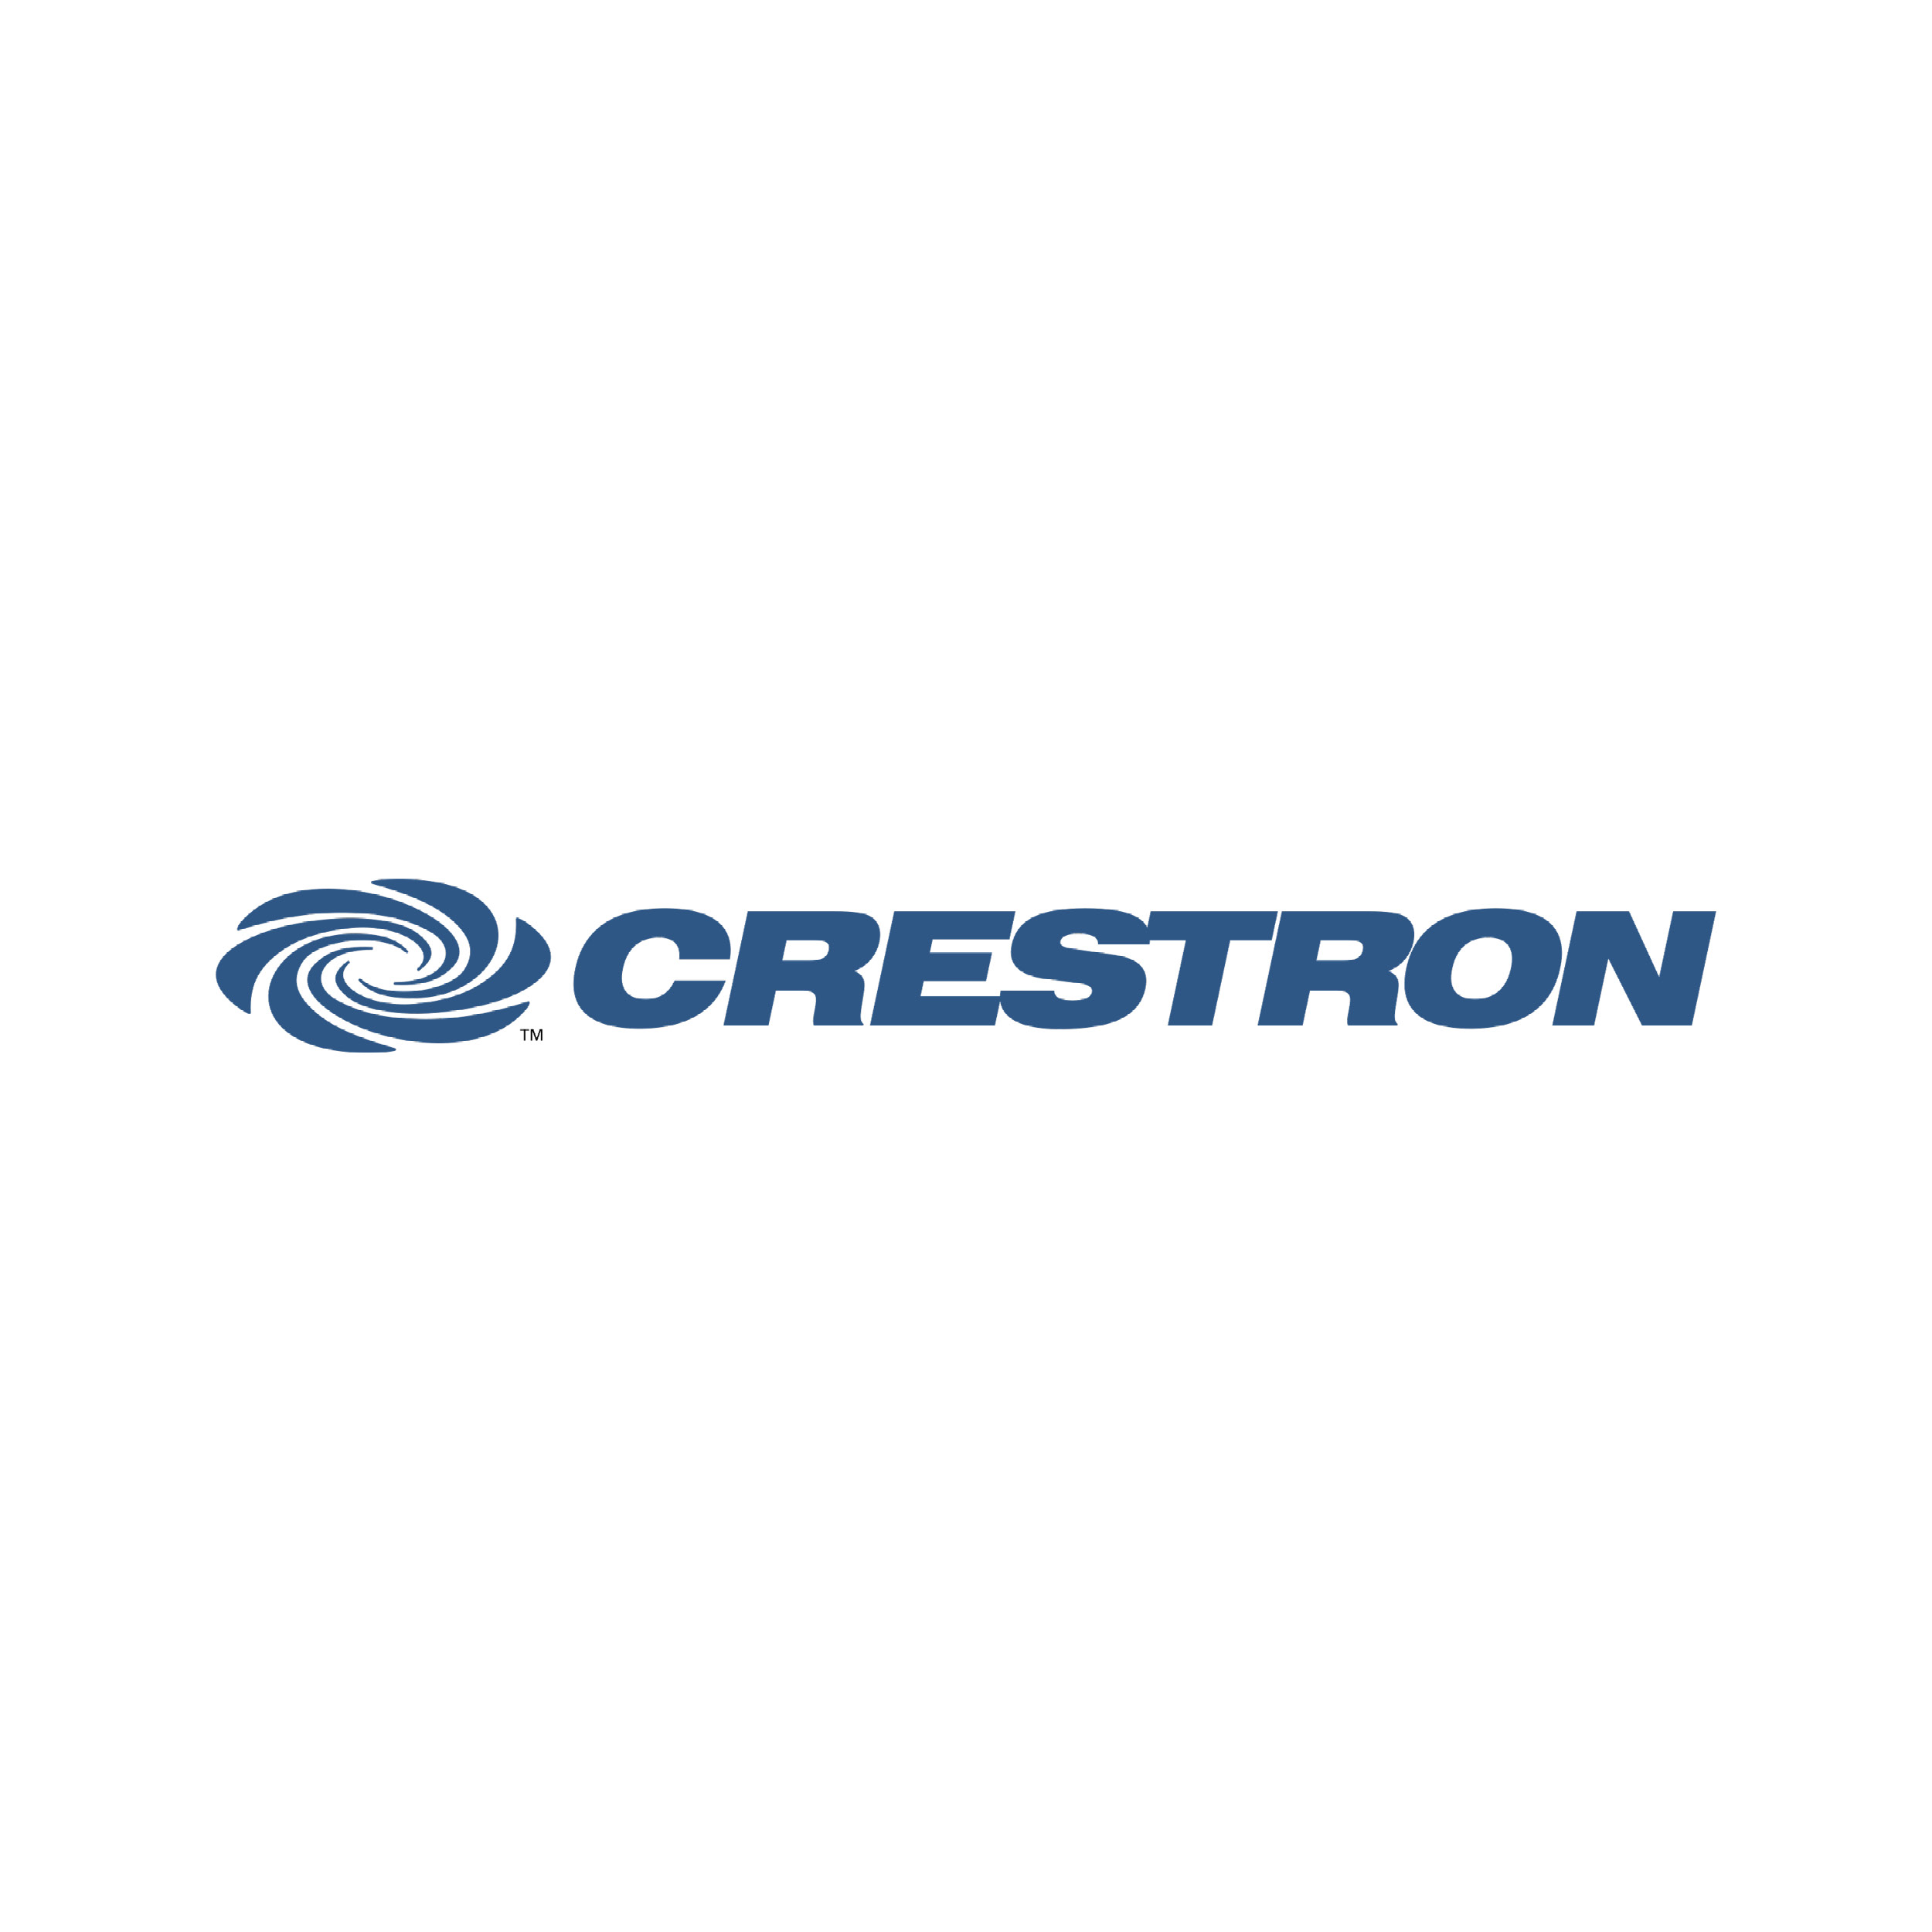 Logo de la marque référence Crestron